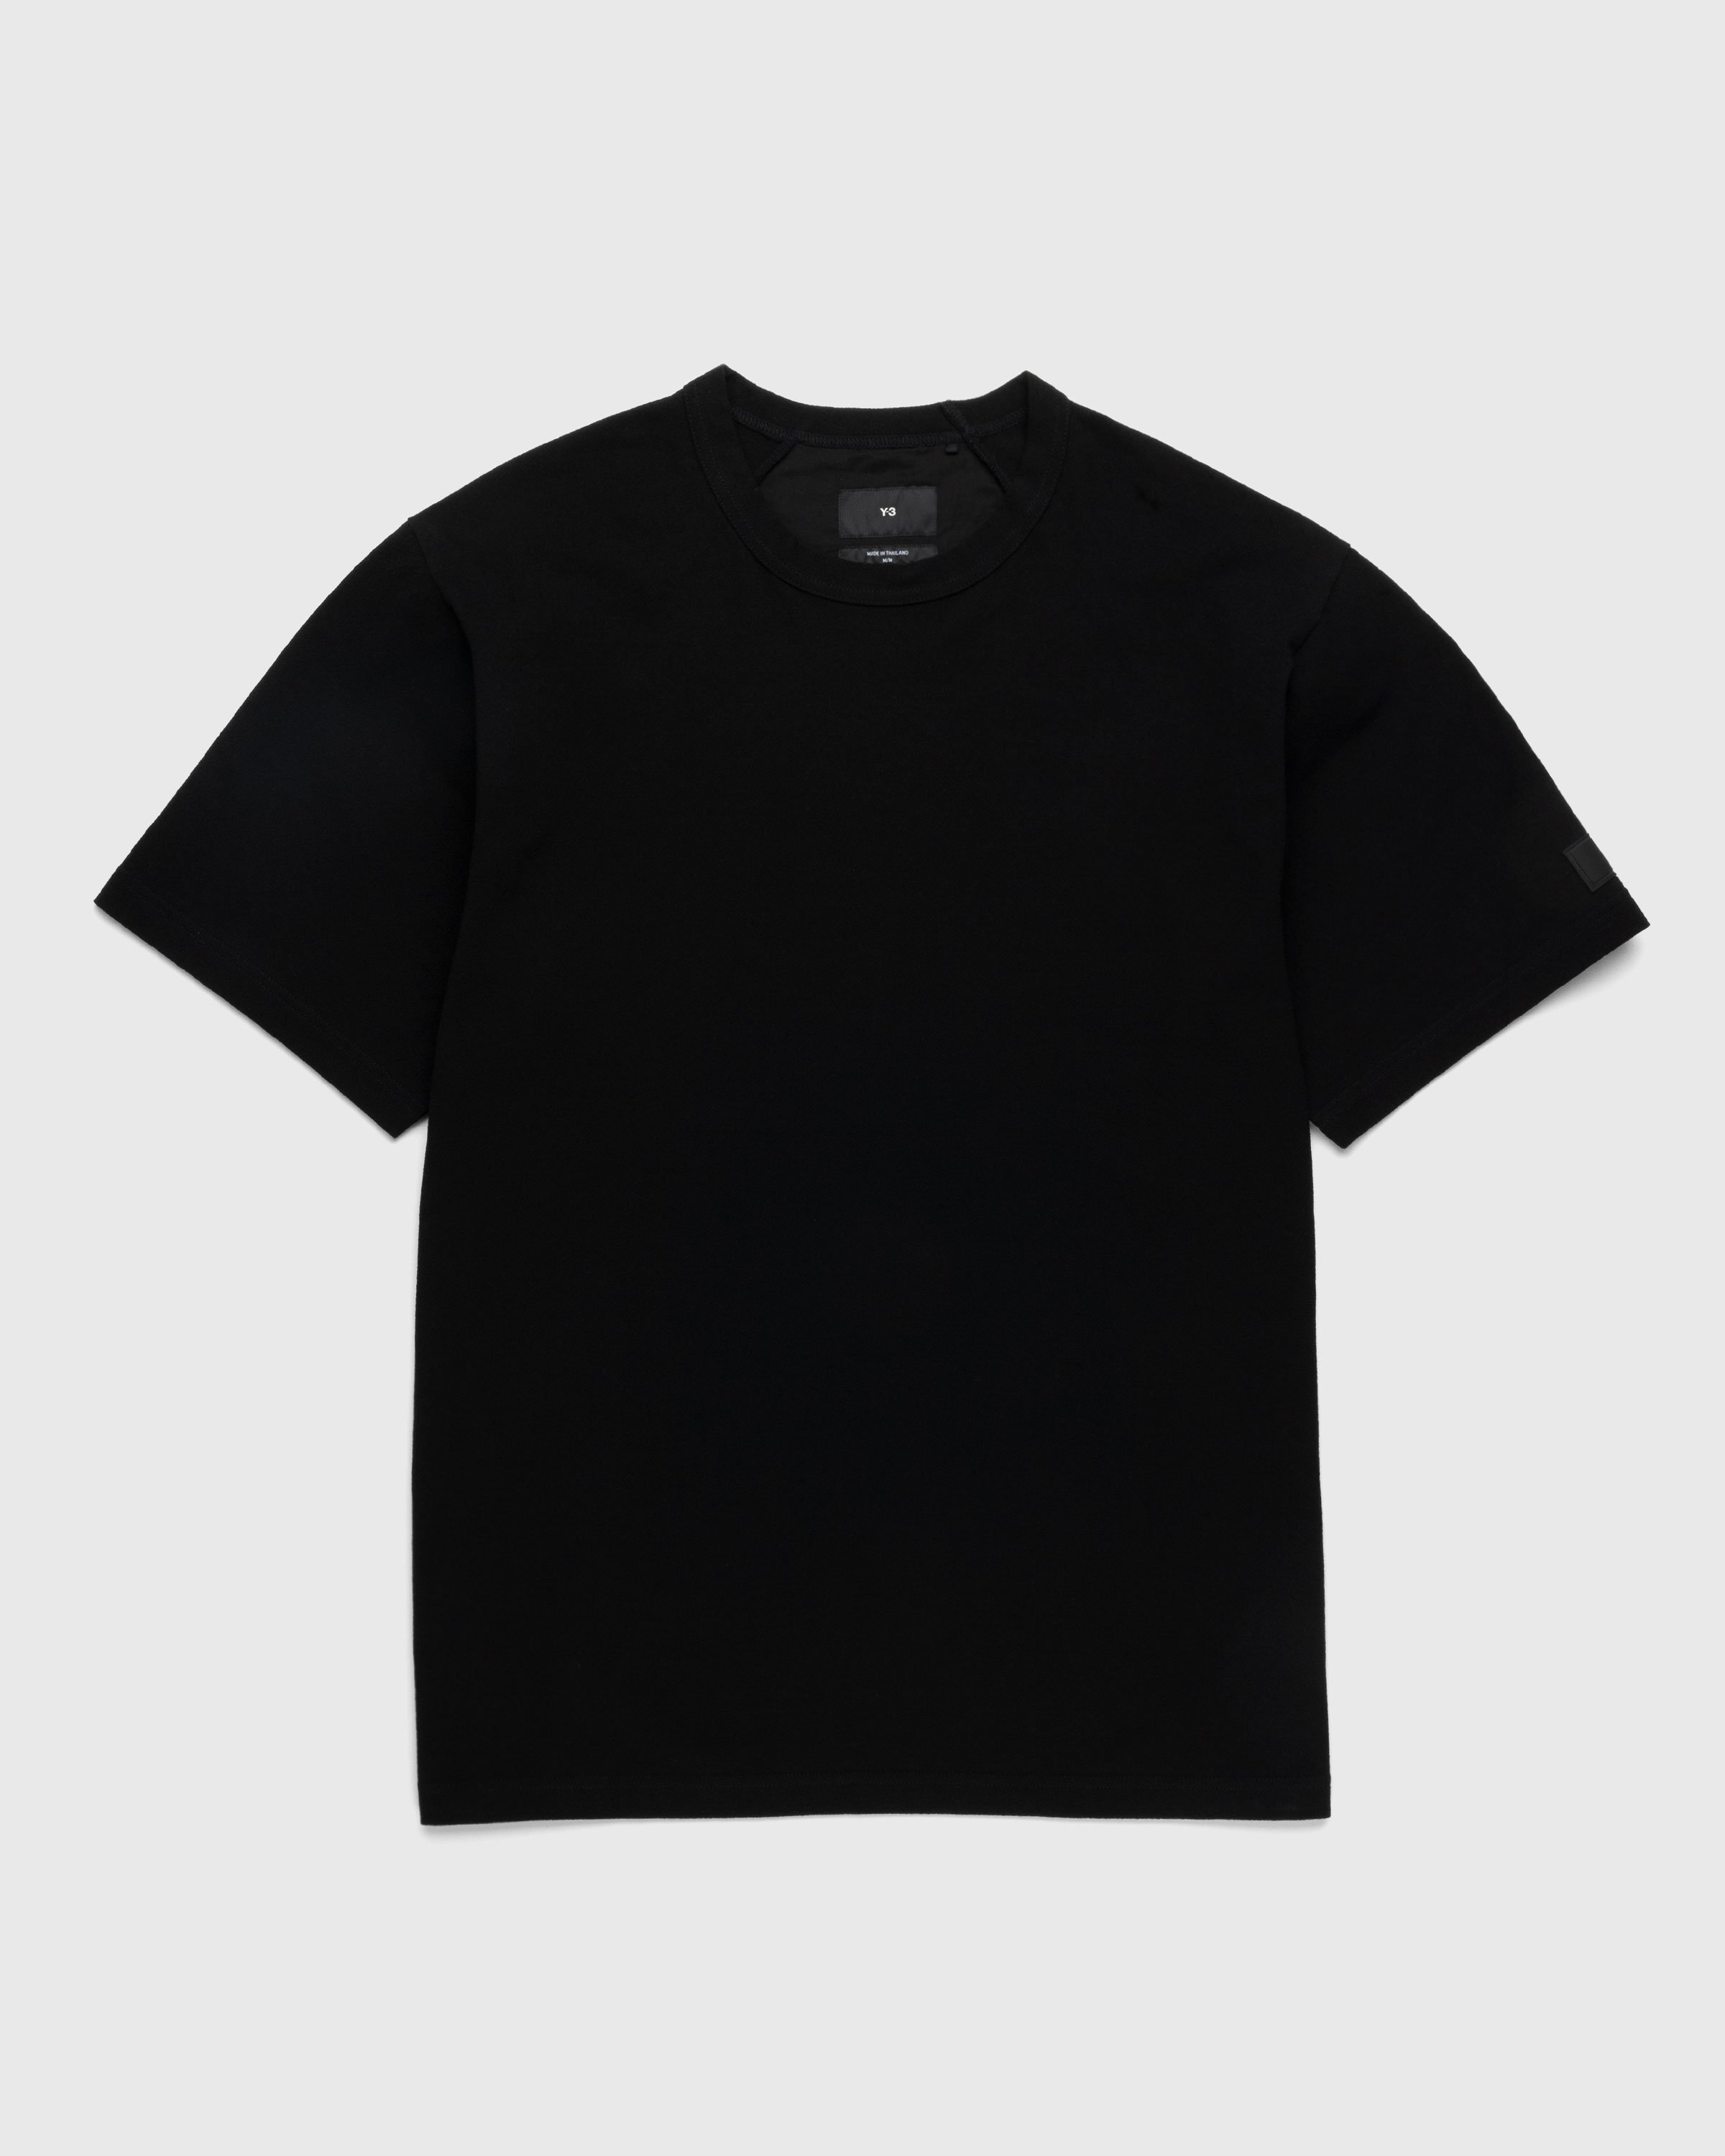 Y-3 - Crepe Short-Sleeve T-Shirt Black - Clothing - Black - Image 1